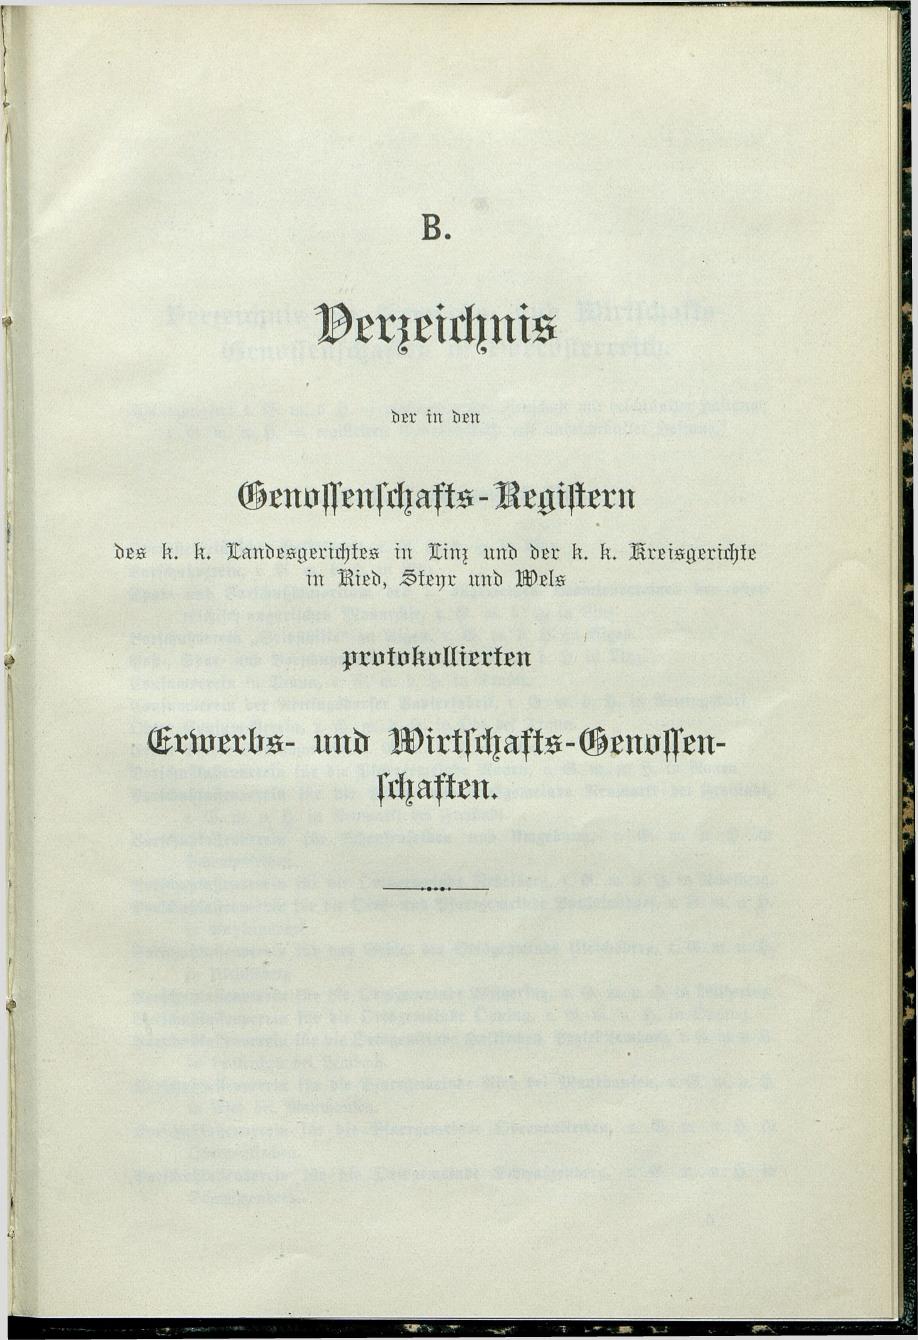 Verzeichnis der protokollierten Firmen und Genossenschaften in Oberösterreich 1908 - Page 67